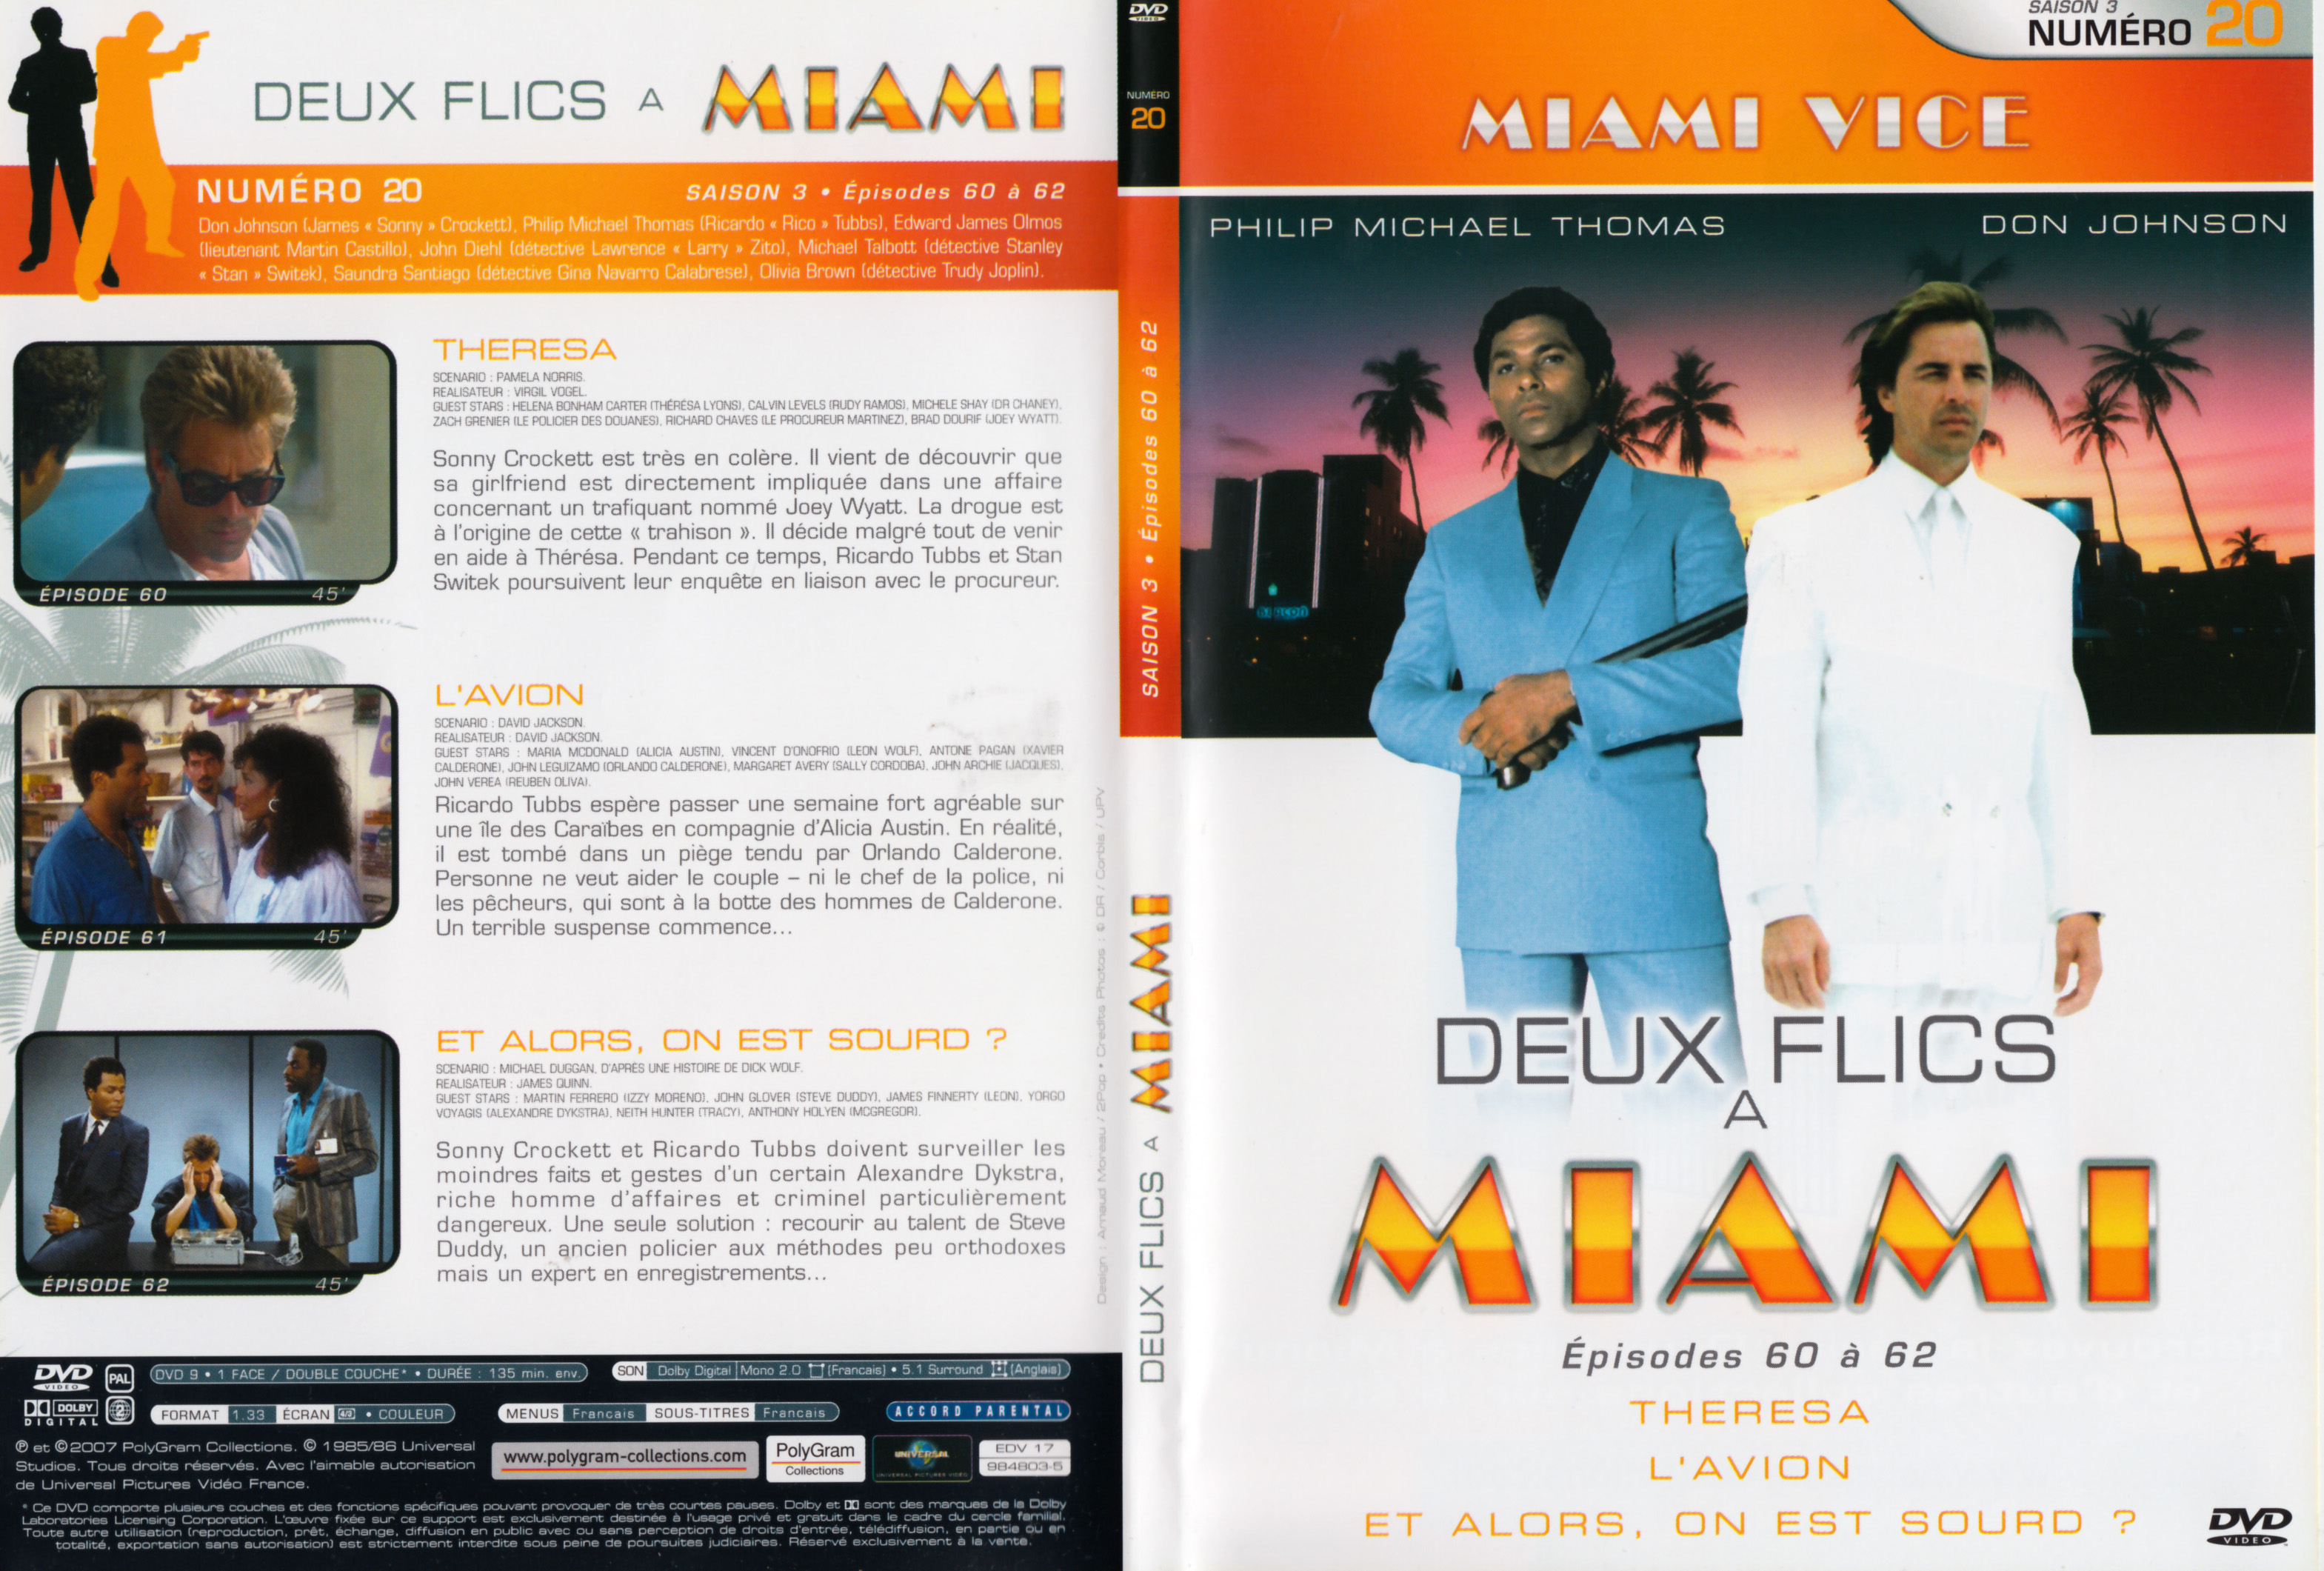 Jaquette DVD Deux flics  Miami Saison 3 vol 20